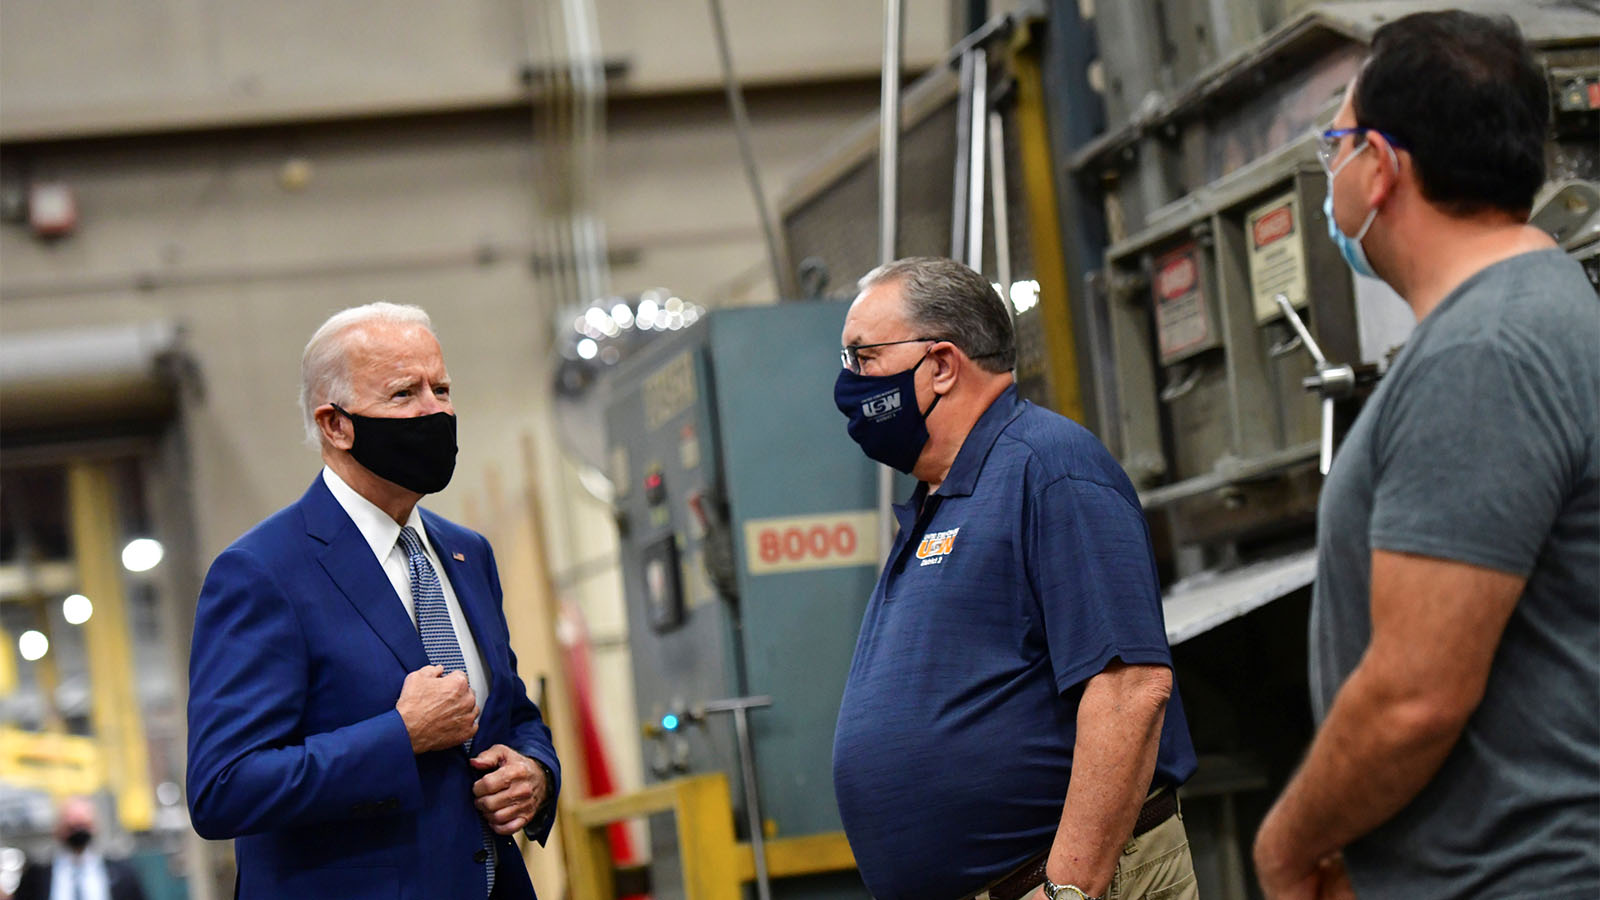 נשיא ארצות הברית ג'ו ביידן משוחח עם עובדי מפעל בארצות הברית (צילום: REUTERS/Mark Makela)